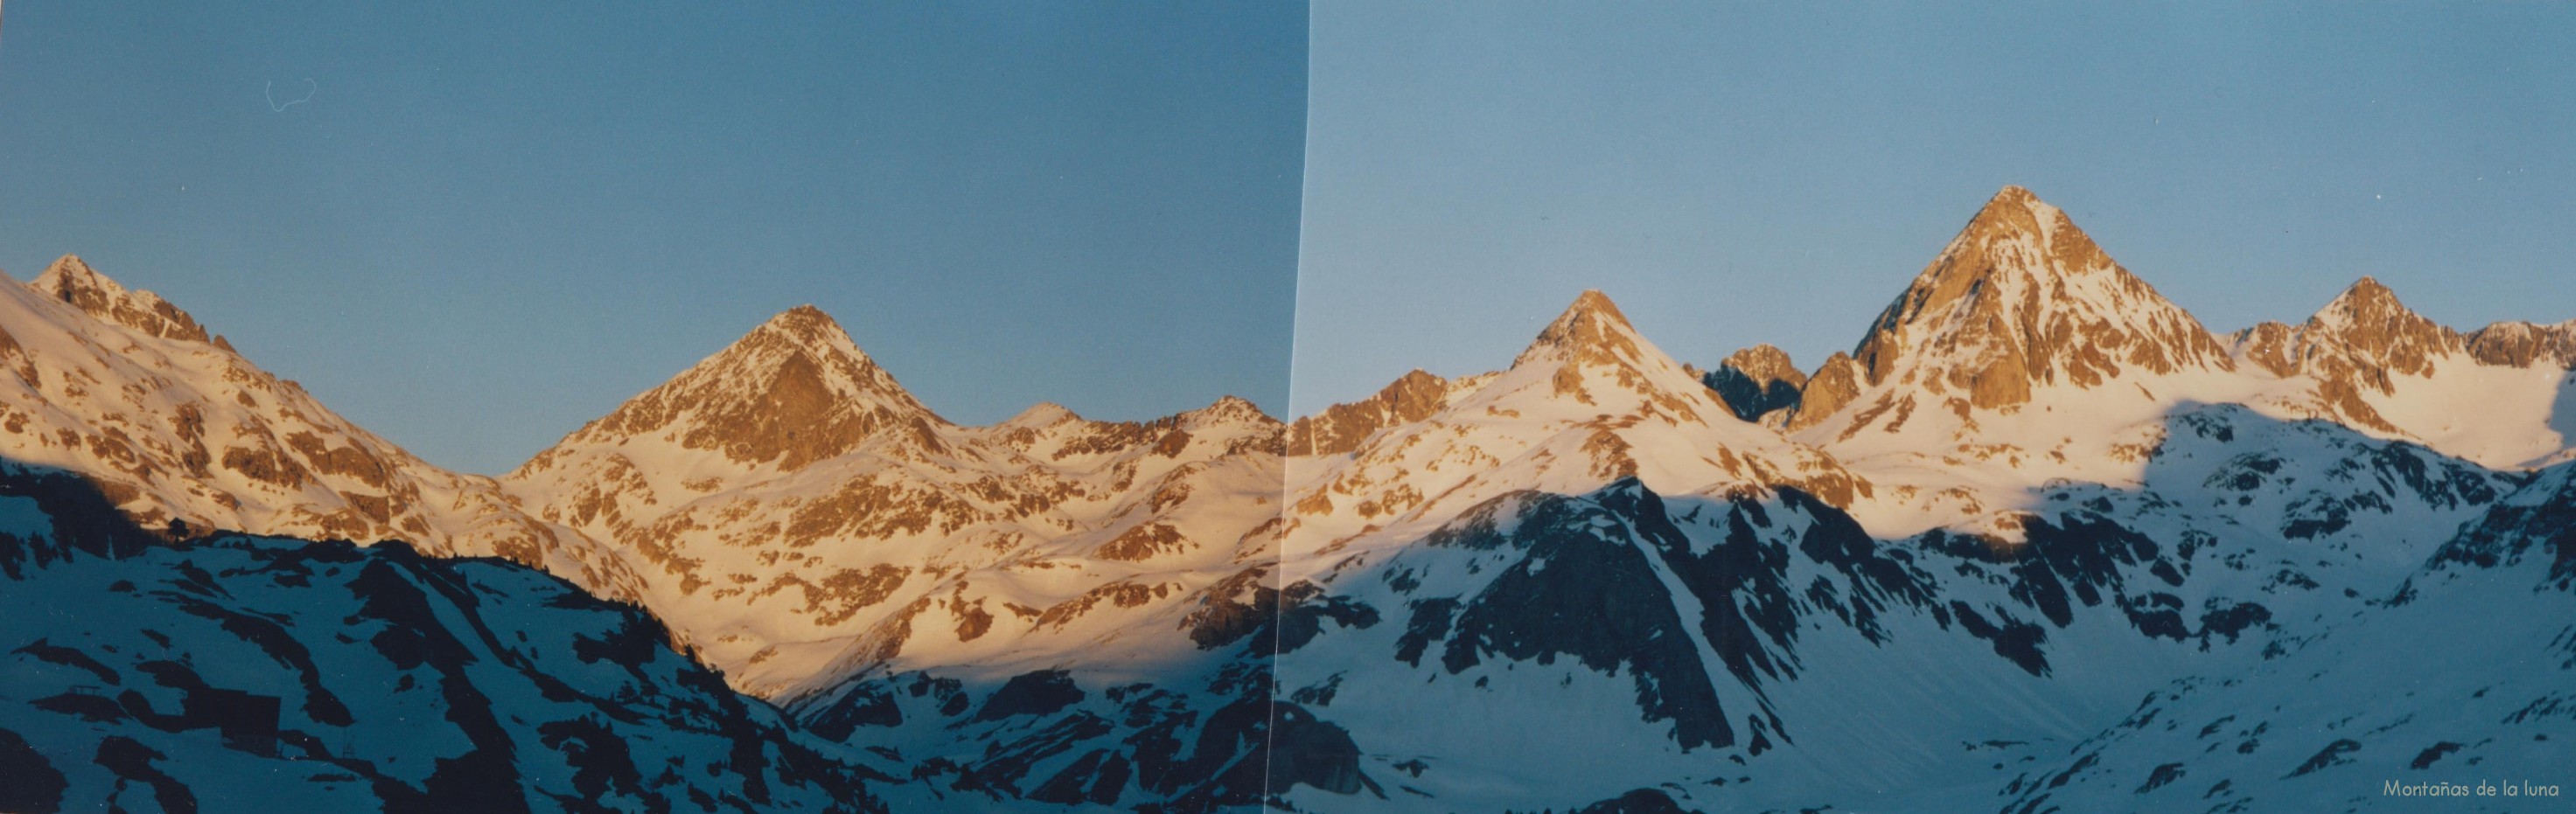 Atardeciendo de izquierda a derecha: Gran Facha, Pico de Campoplano, Pico de Llena Cantal y Pico de Piedrafita